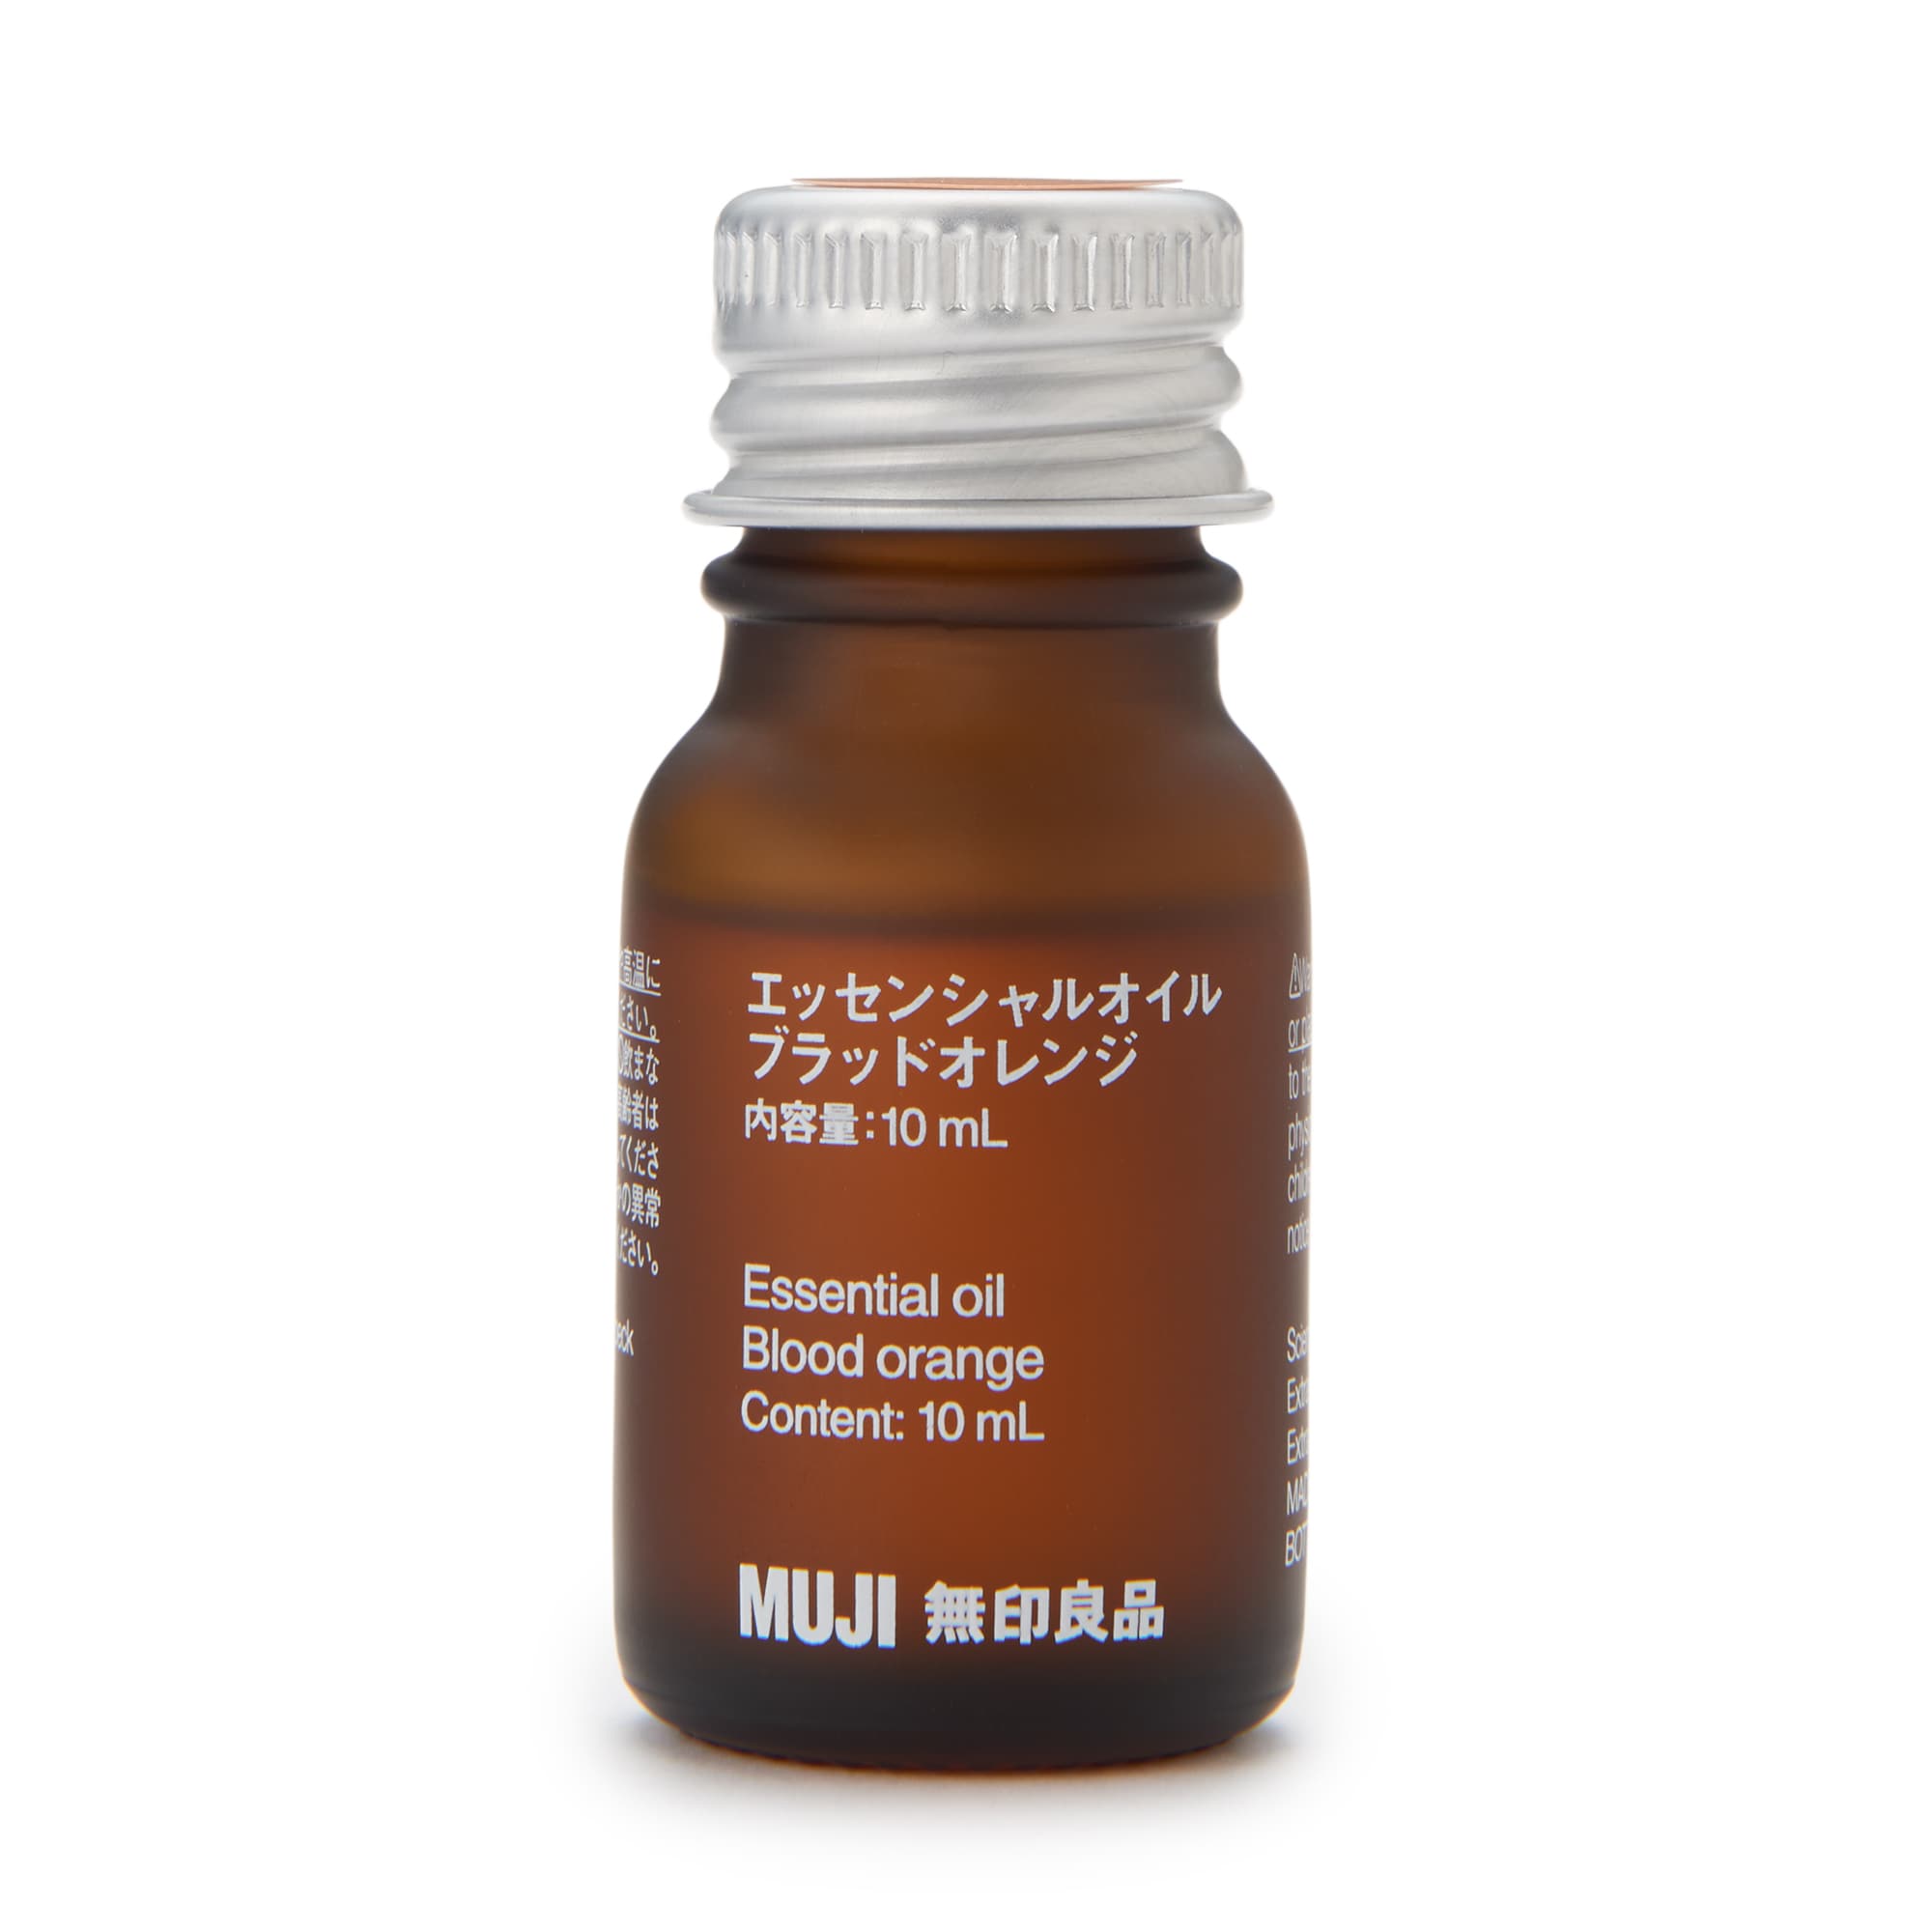 무인양품 일본 천연 아로마 향수 오일 에센셜 오일 10ml 블러드 오렌지 